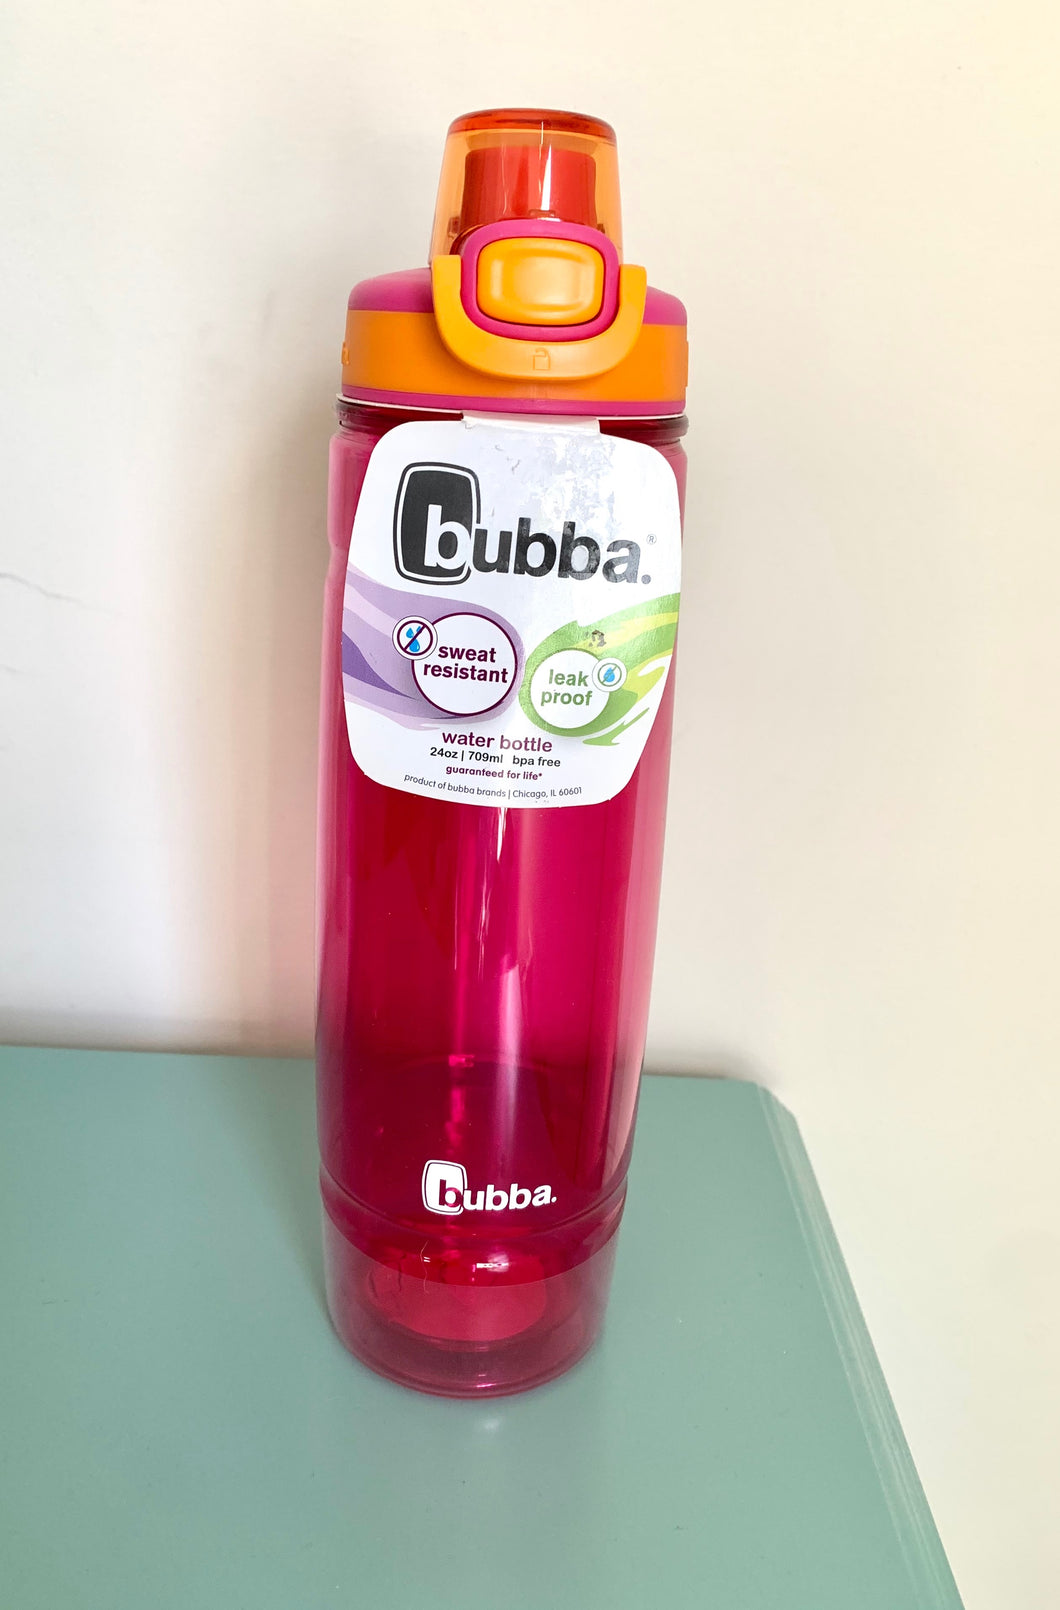 Bubba Leak Proof 24oz Water Bottle